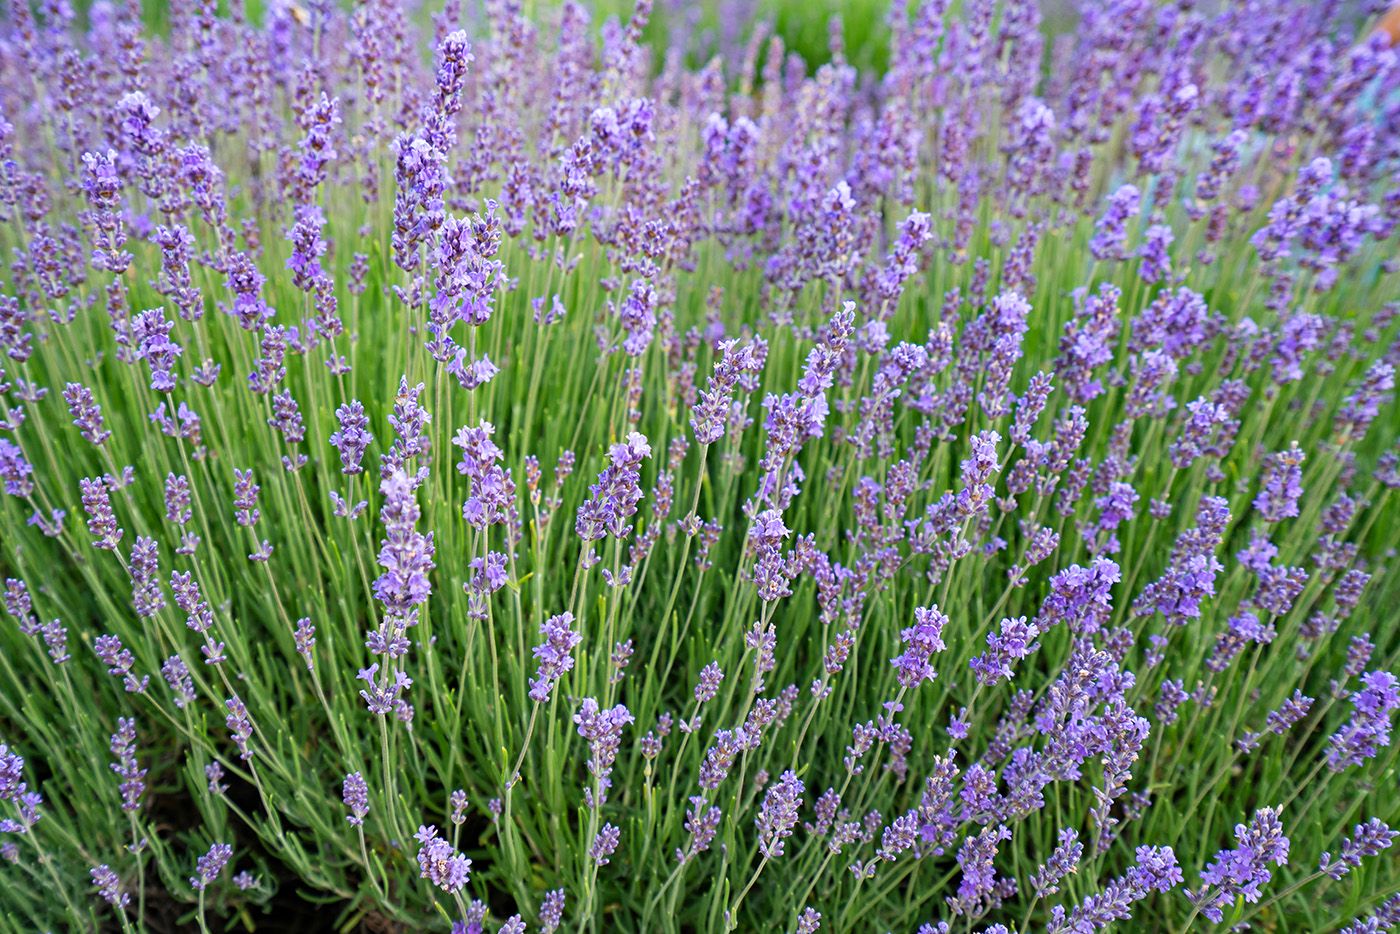 Lavendel - Lavandula intermedia 'Dutch'